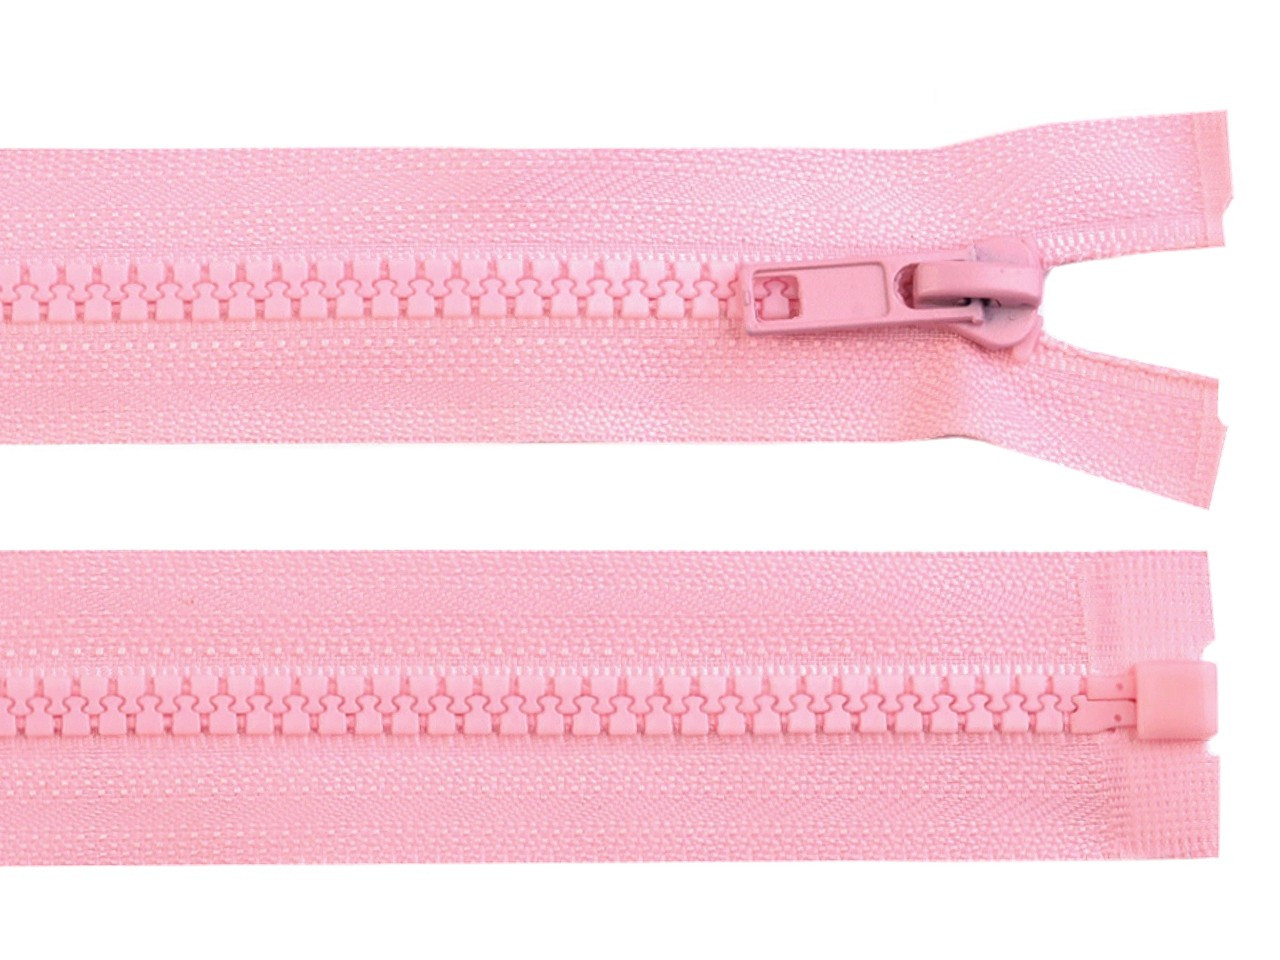 Kostěný zip No 5 délka 45 cm bundový, barva 134 růžová dětská světlá